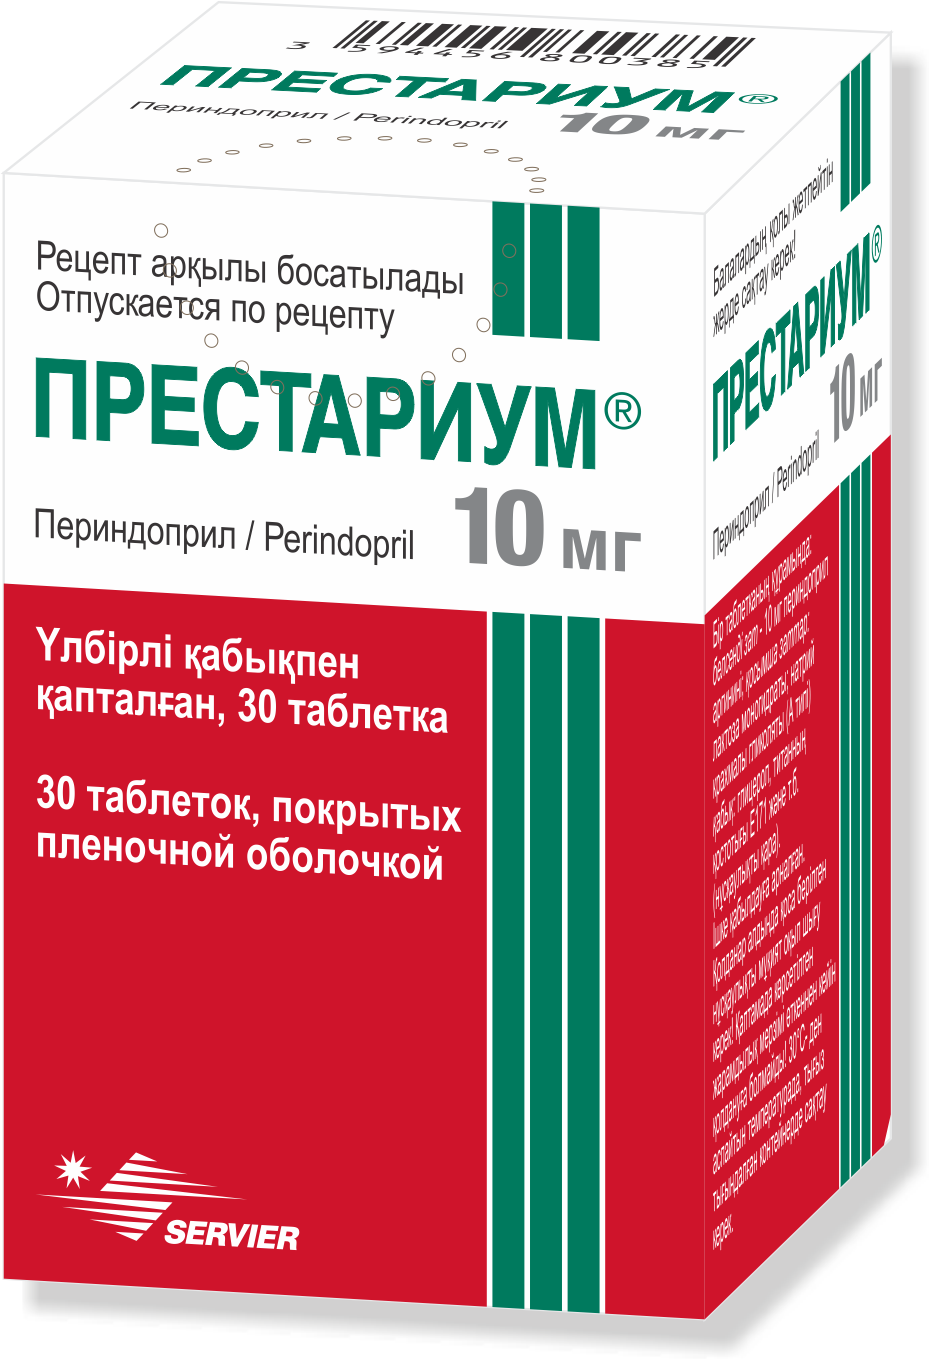 Аналог престариума 5 мг. Престариум 10. Престариум 0.5 мг. Престариум 2 мг. Престариум таблетки 5/5.